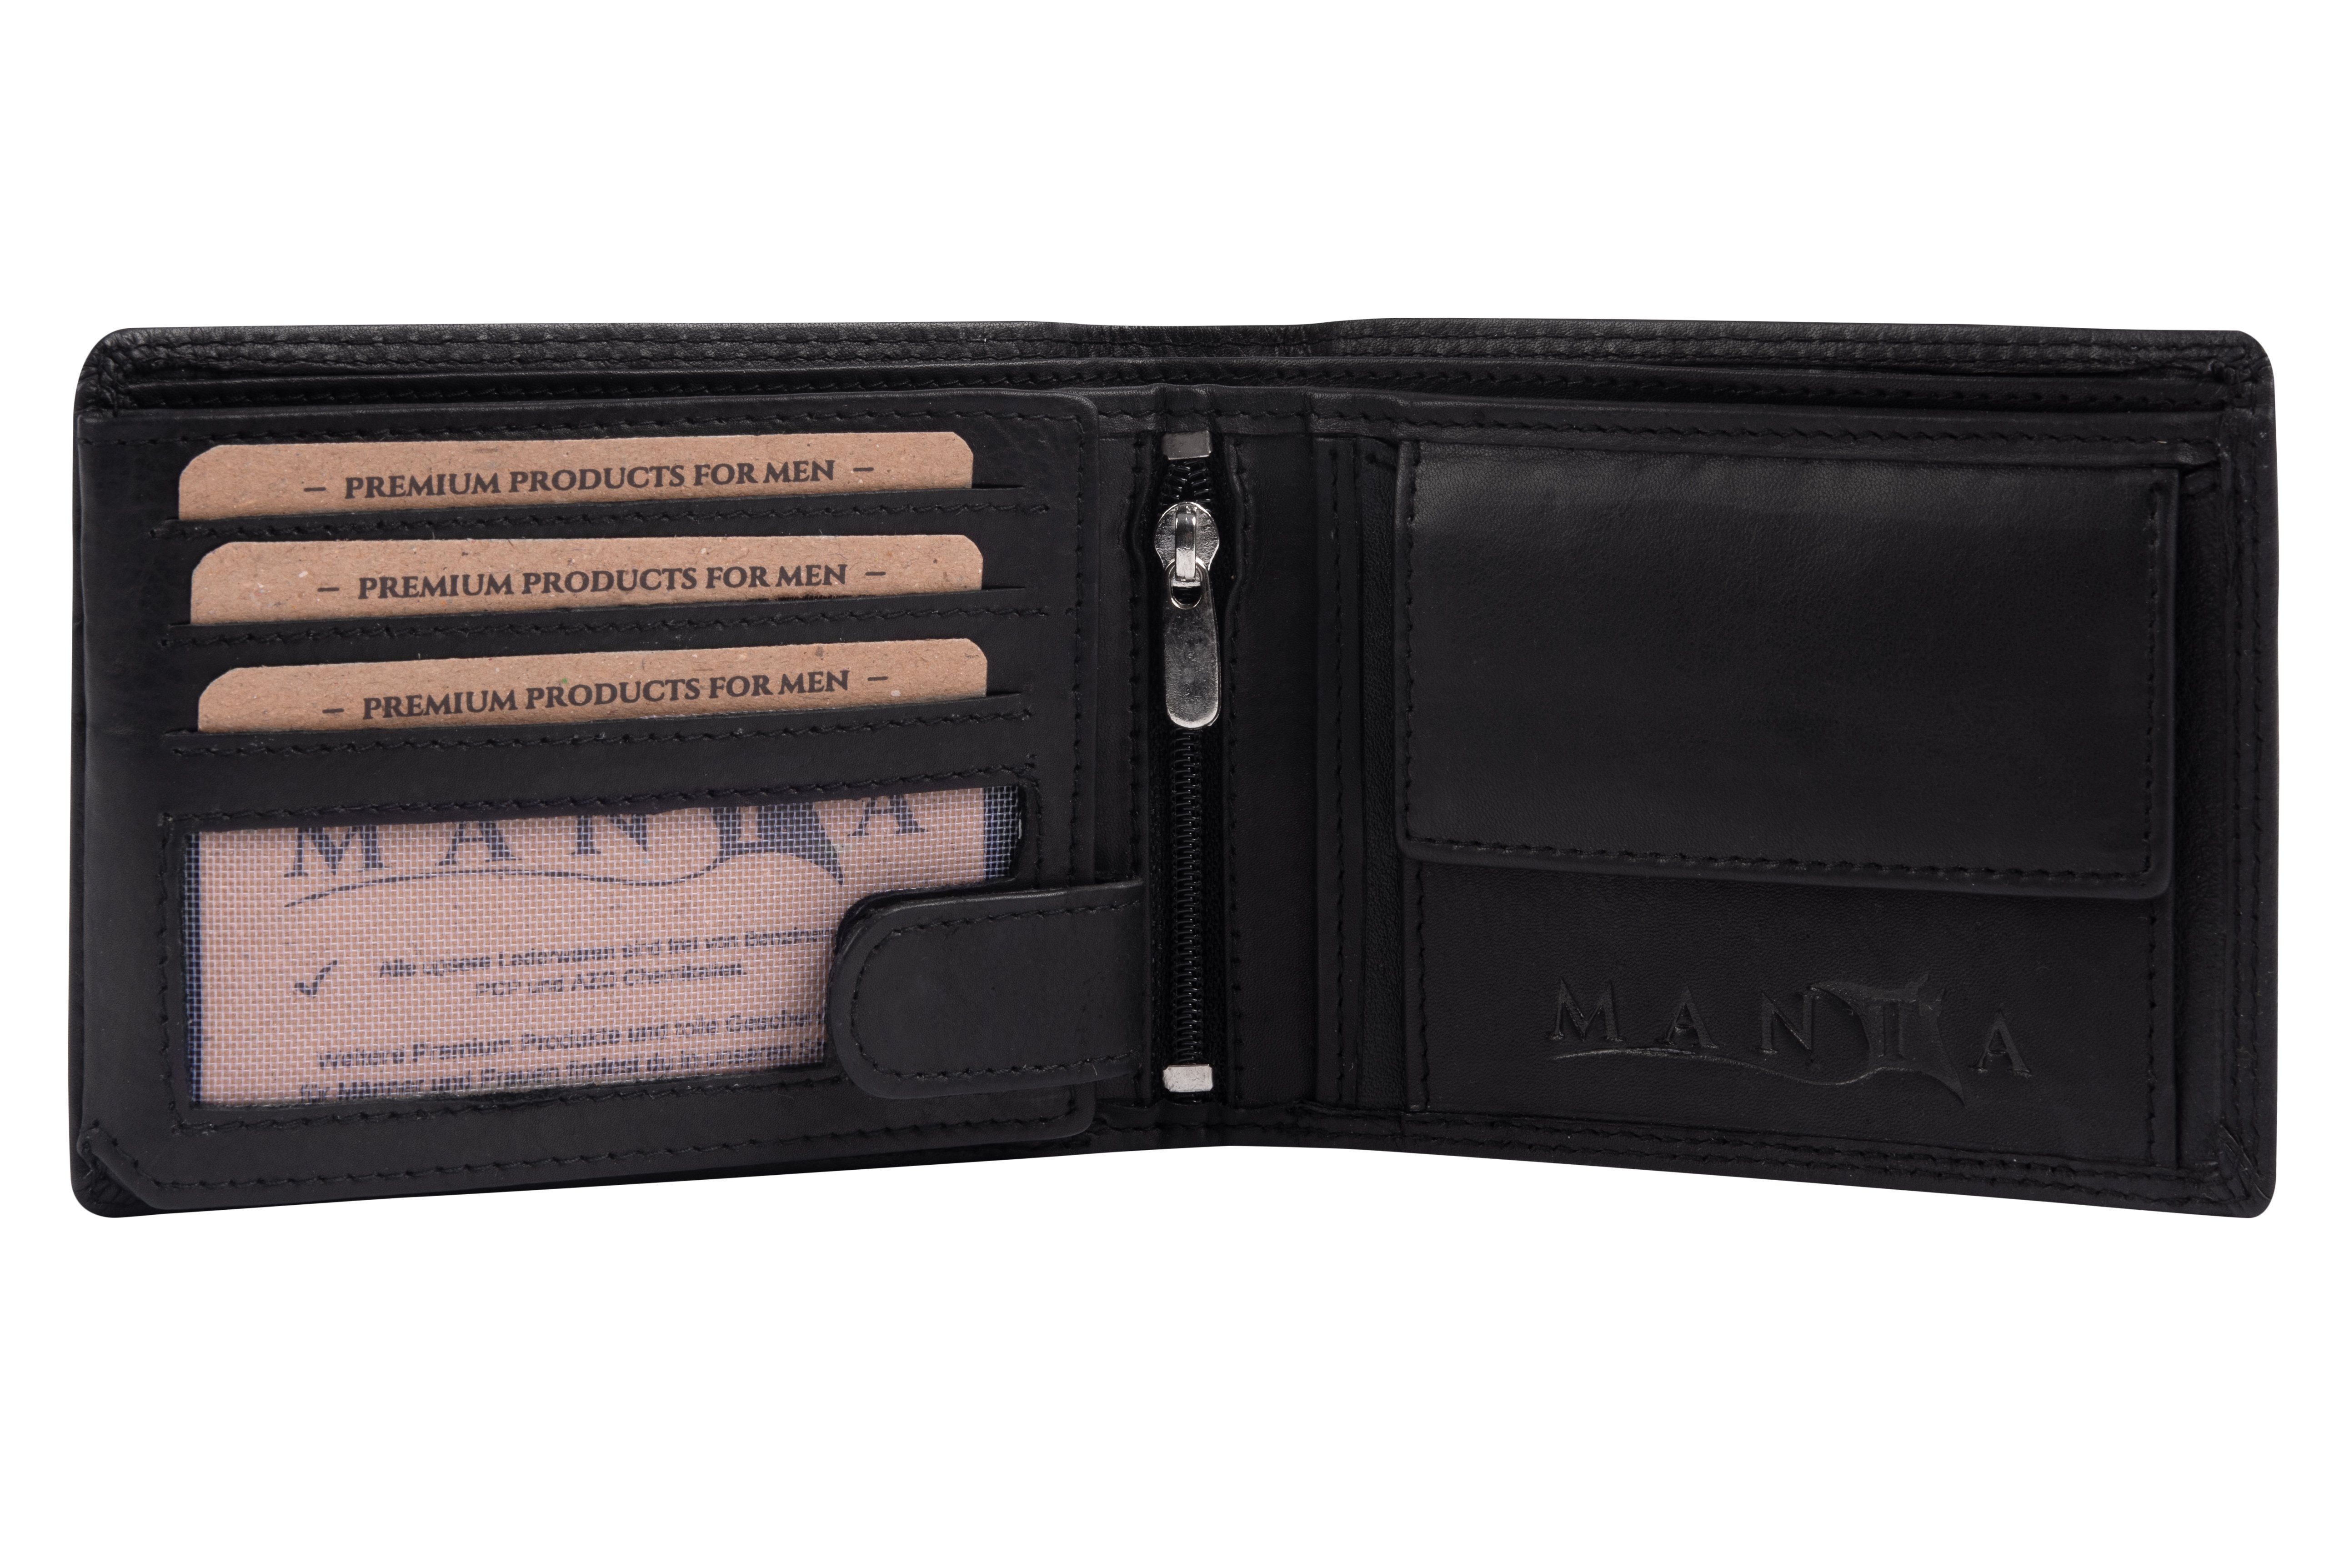 MANTA Geldbörse Premium aus + Schutz Safe RFID Echtes Leder Herrengeldbeutel RFID Black Brieftasche, Echtleder